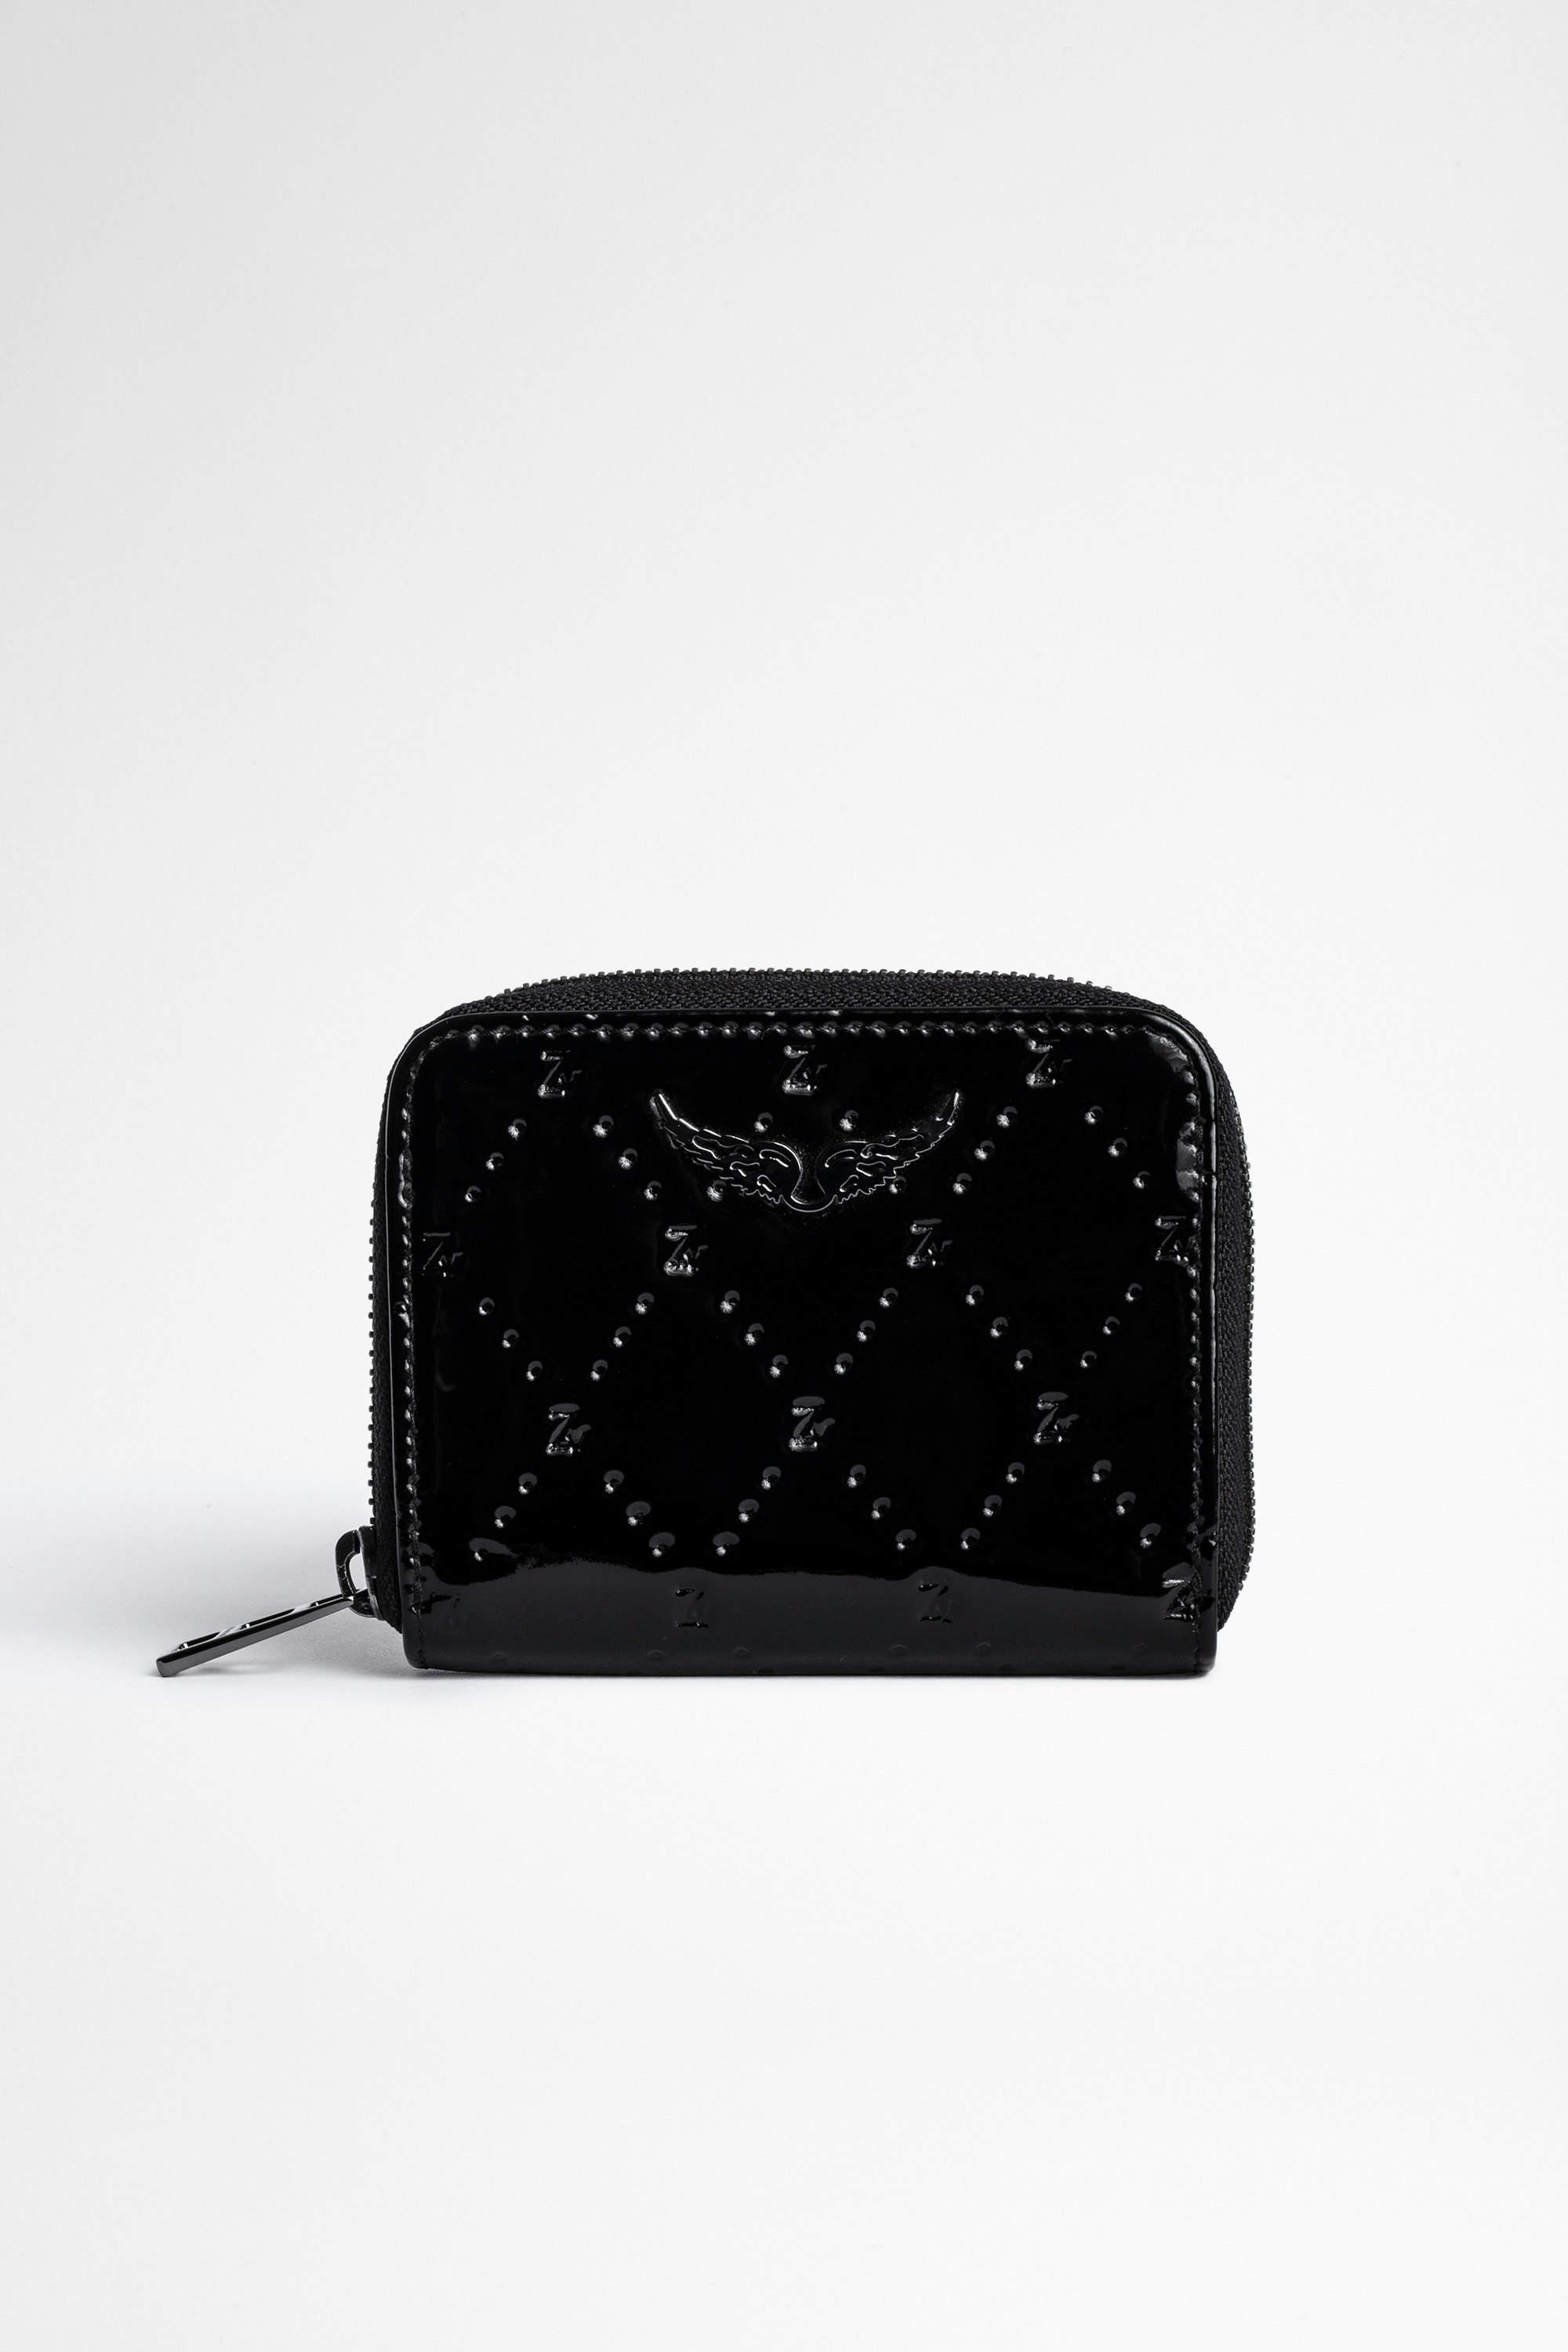 Portafoglio ZV Small Wallet Embossed Mini portafoglio in pelle nera verniciata all-over